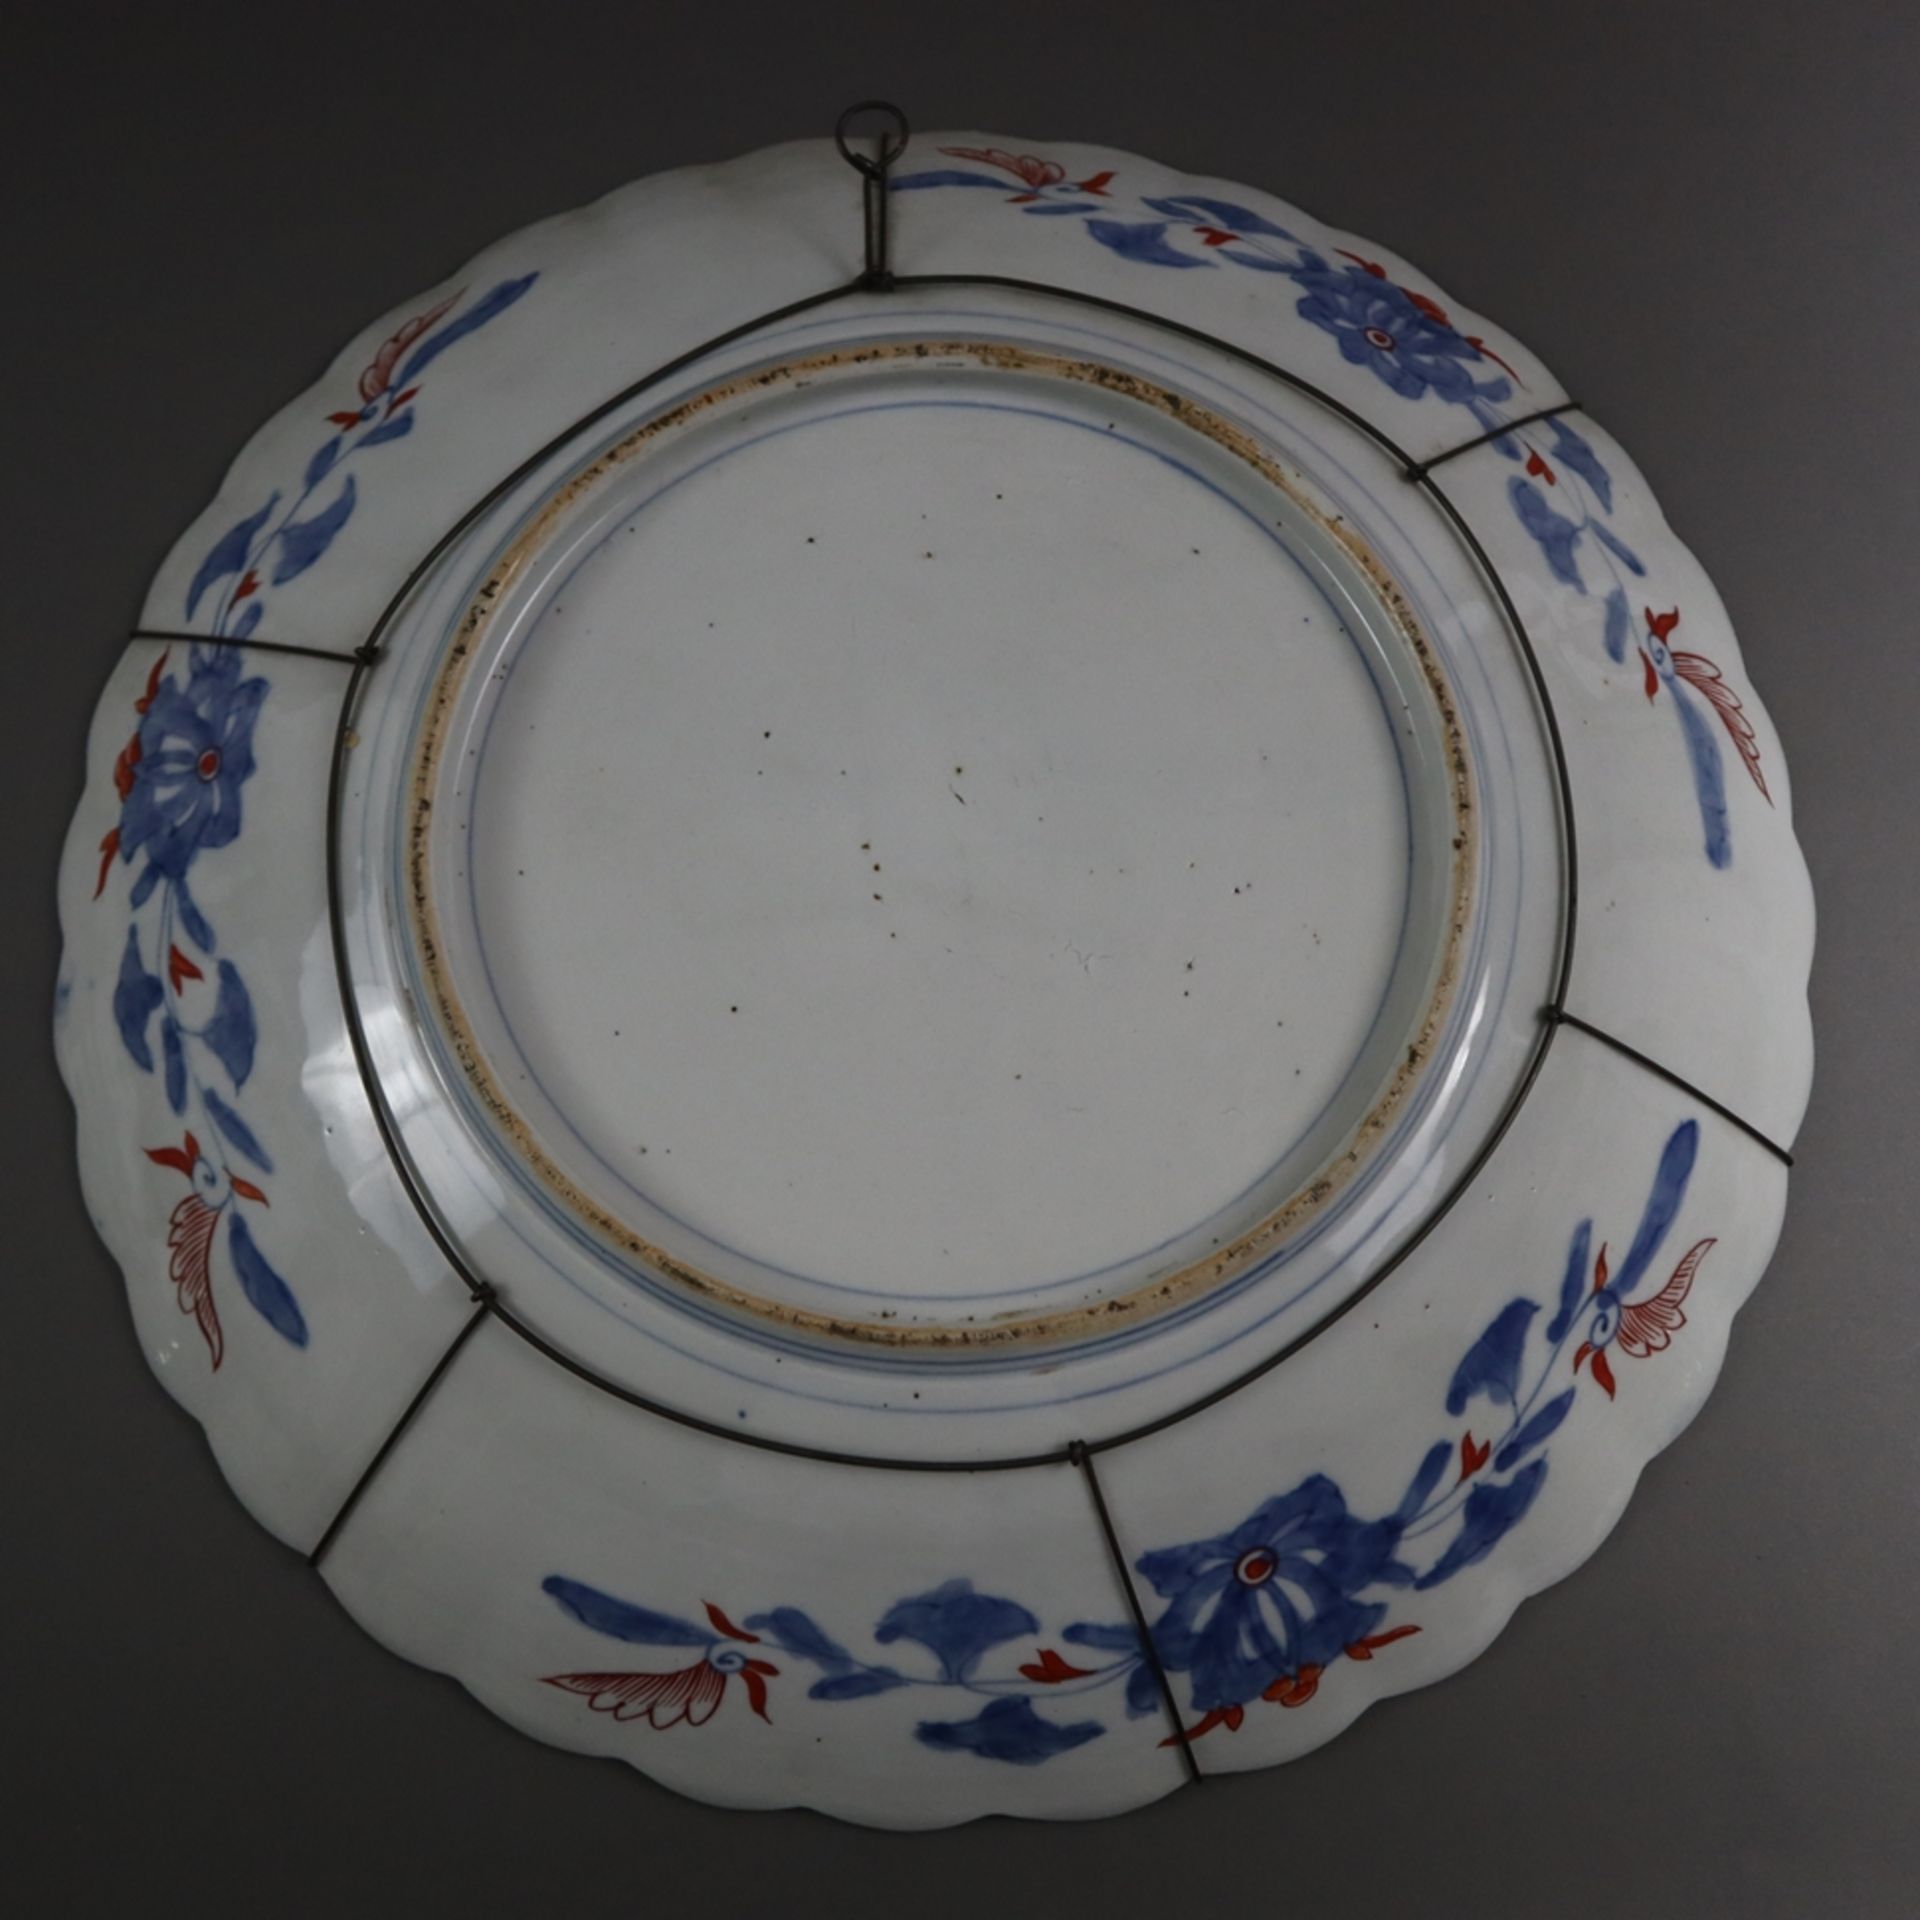 Große Imari-Platte - Japan, Meiji-/ Taishō-Zeit, Porzellan, leicht vertiefte Form mit gefächerter F - Image 9 of 9